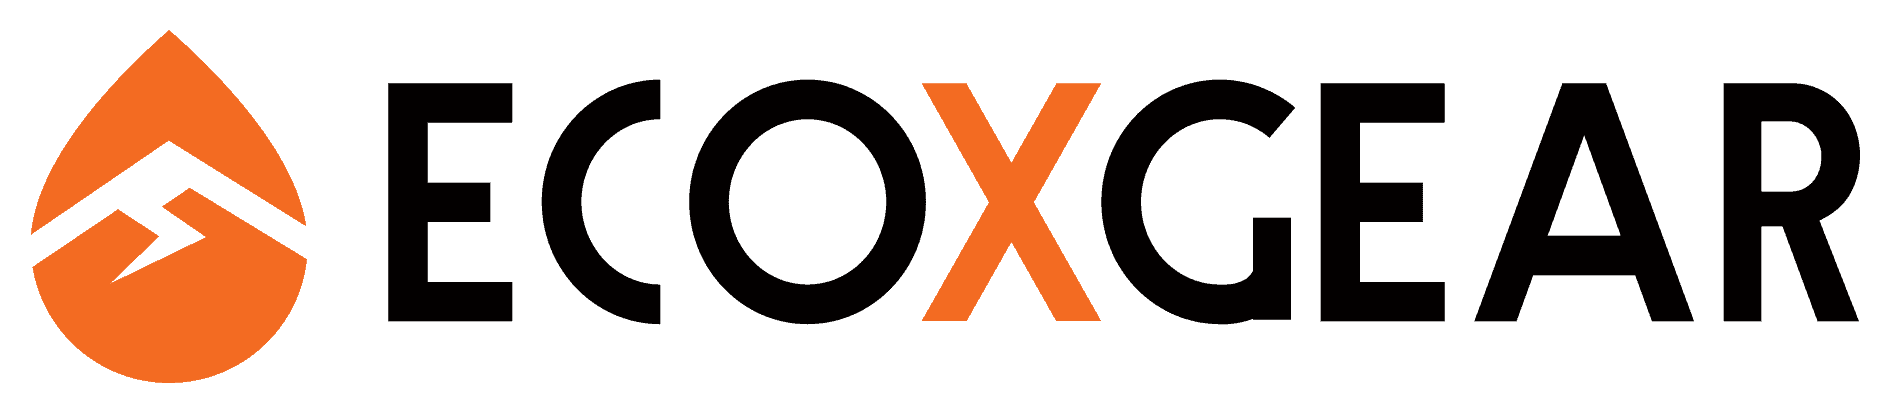 ECOXGEAR_Logo